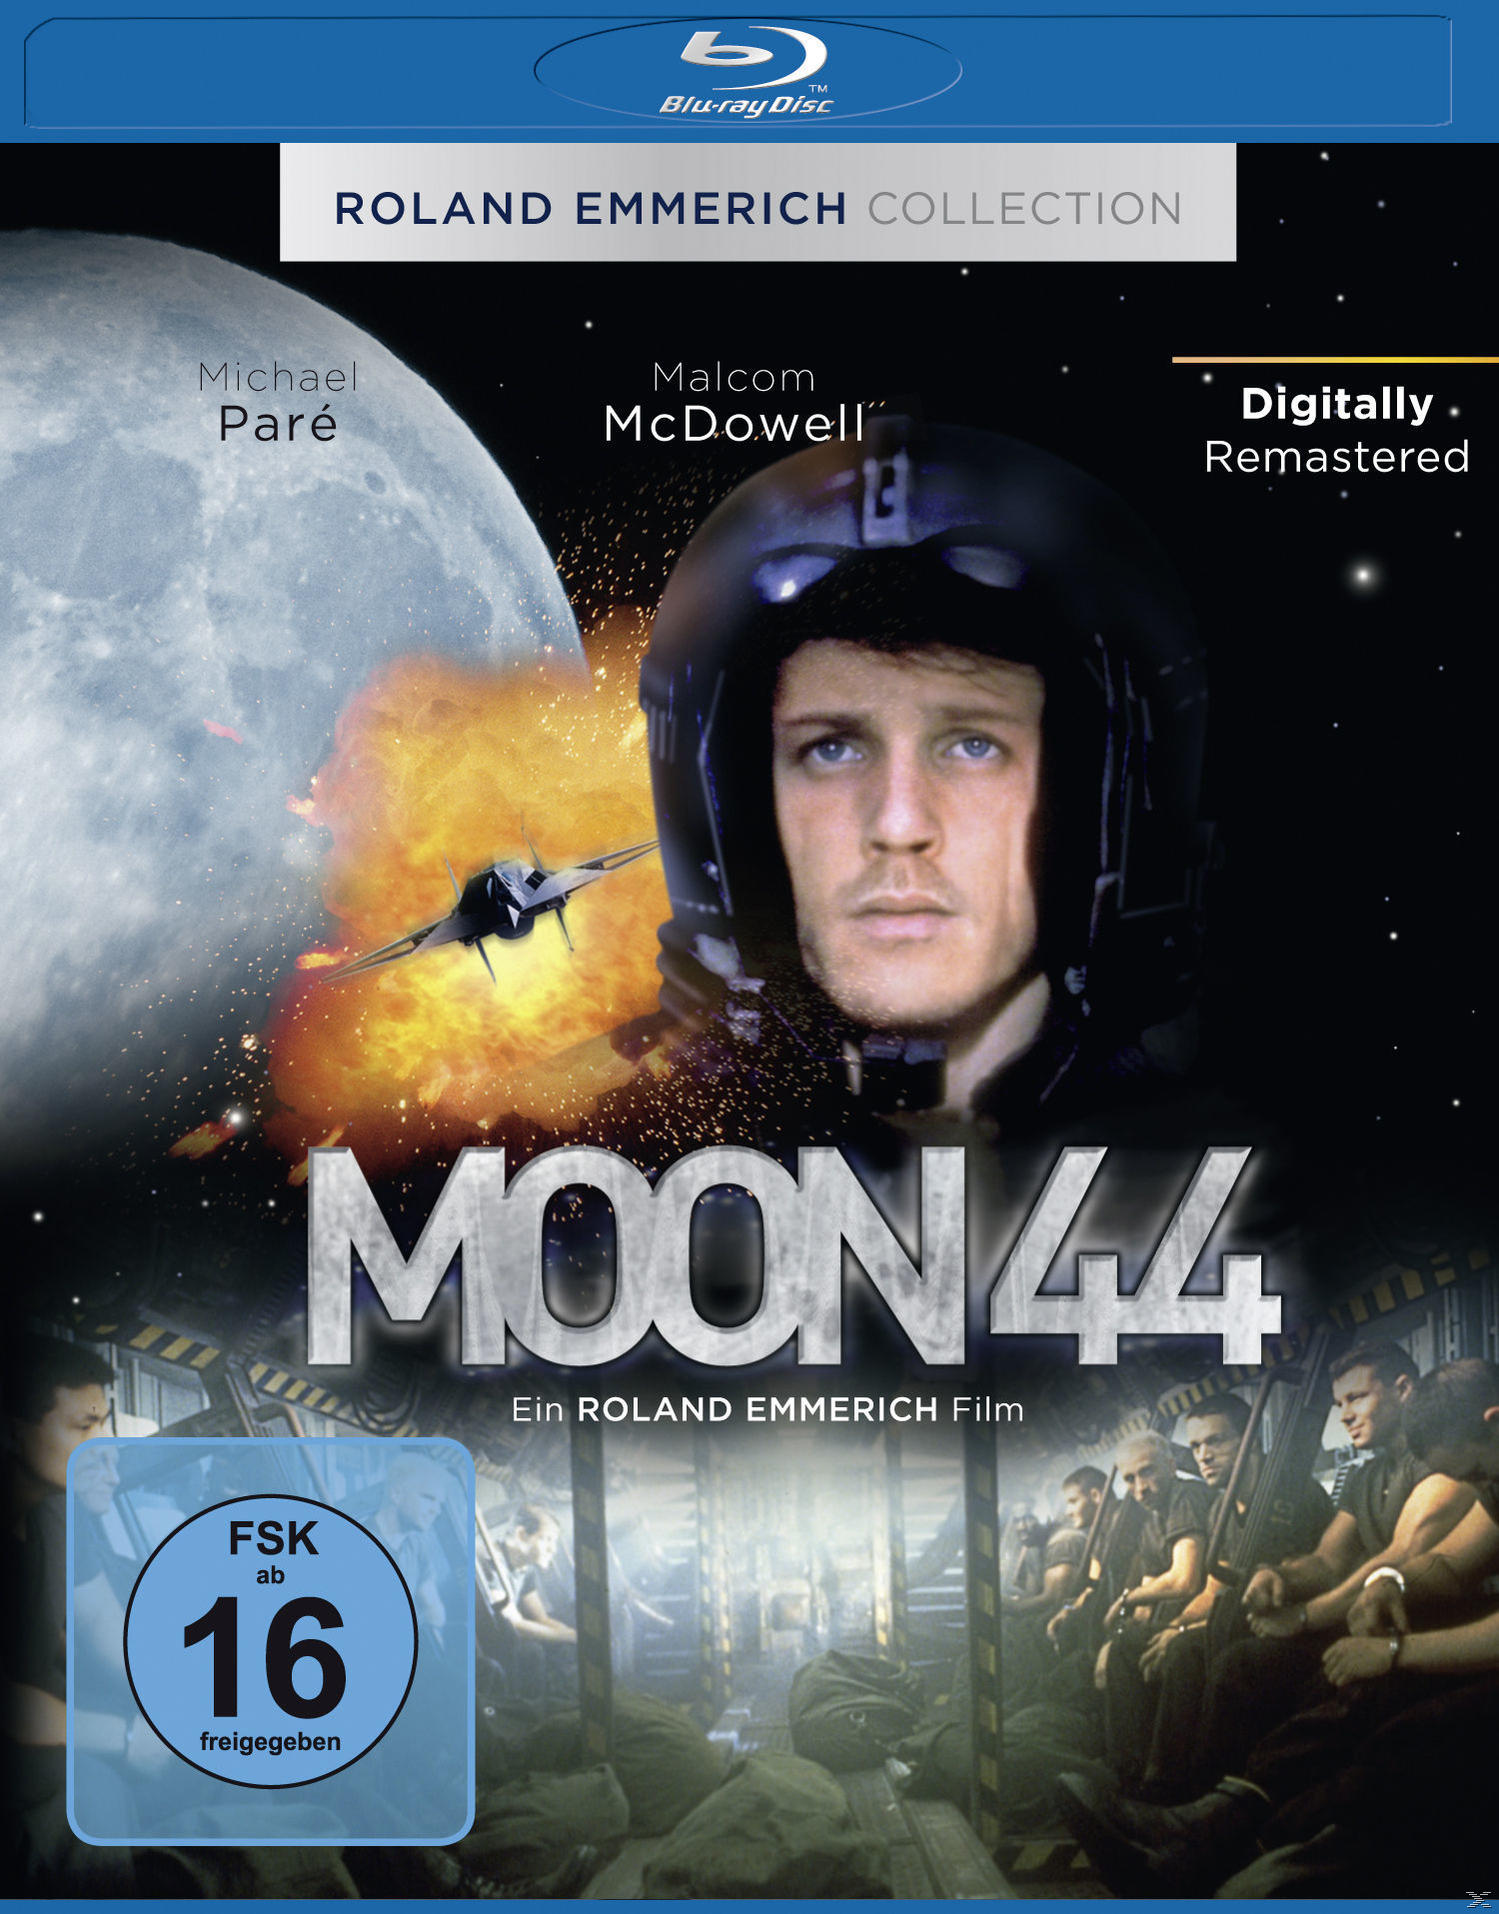 Moon 44 Blu-ray